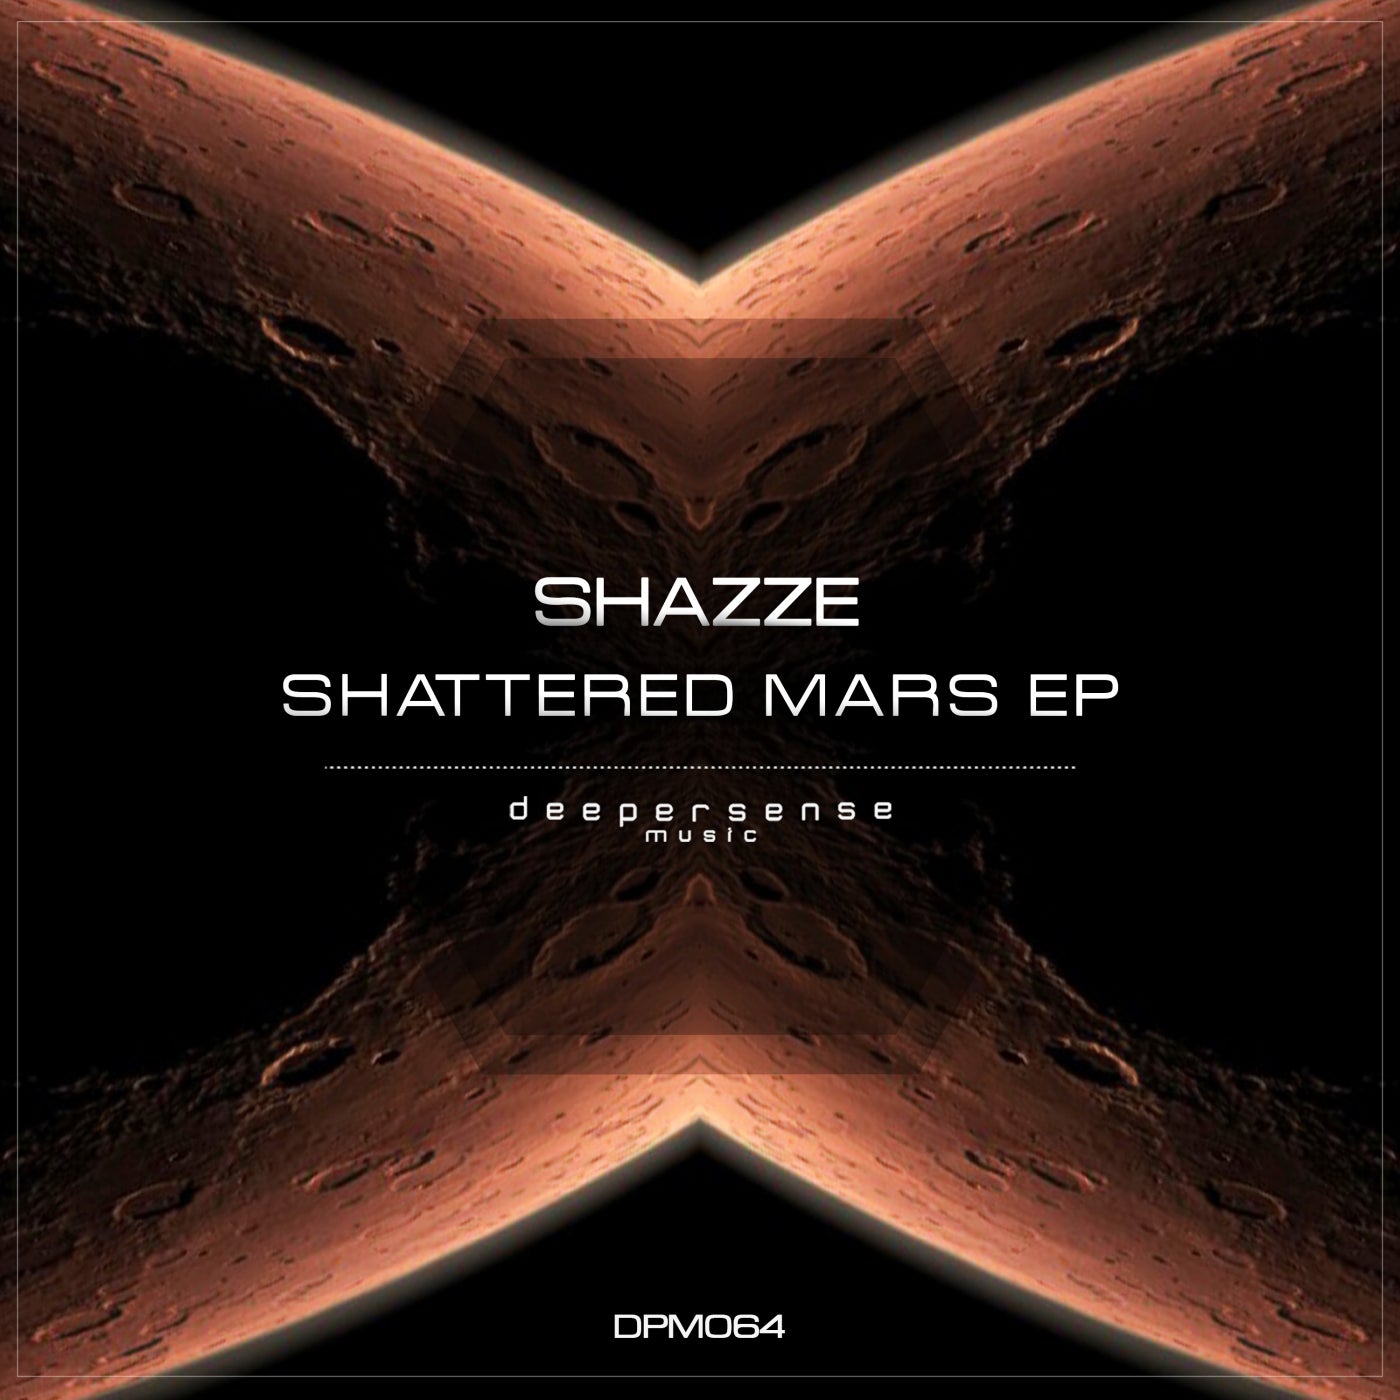 Shattered Mars